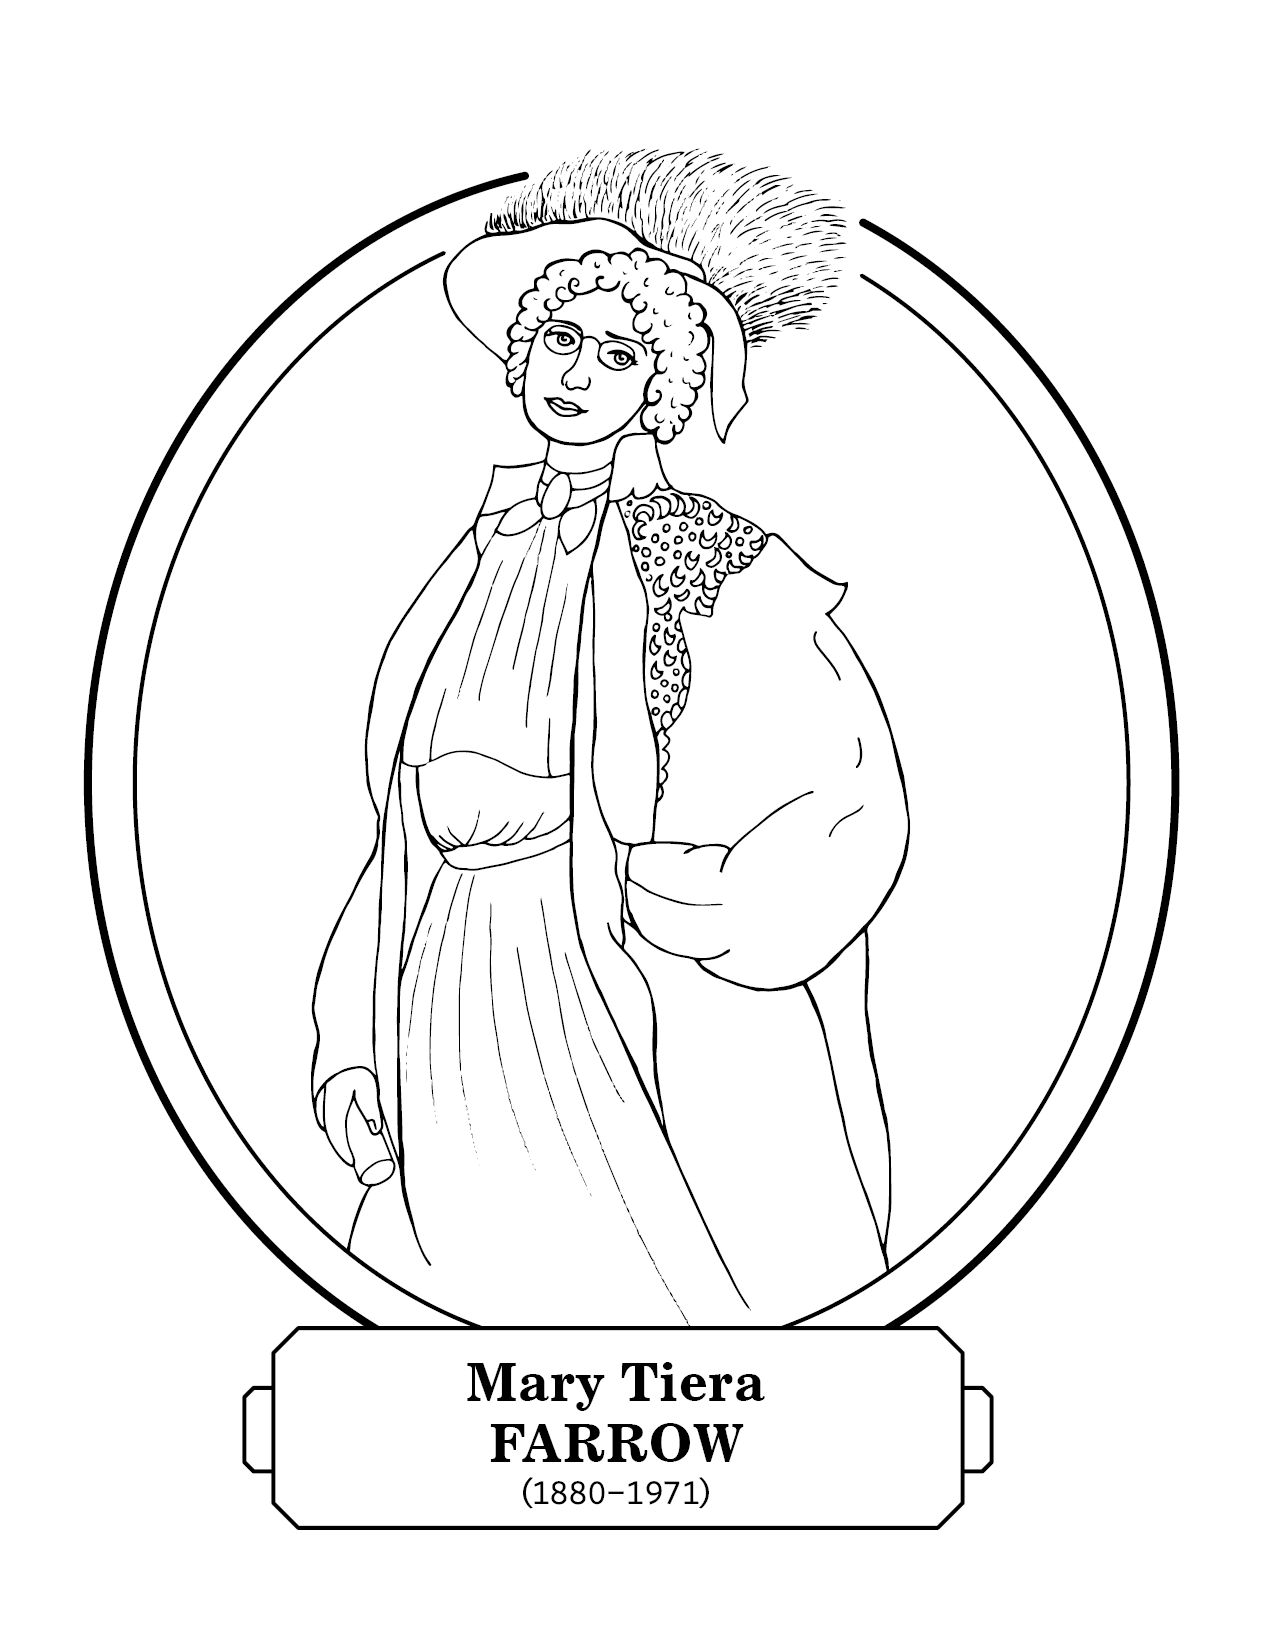 Mary Tiera Farrow